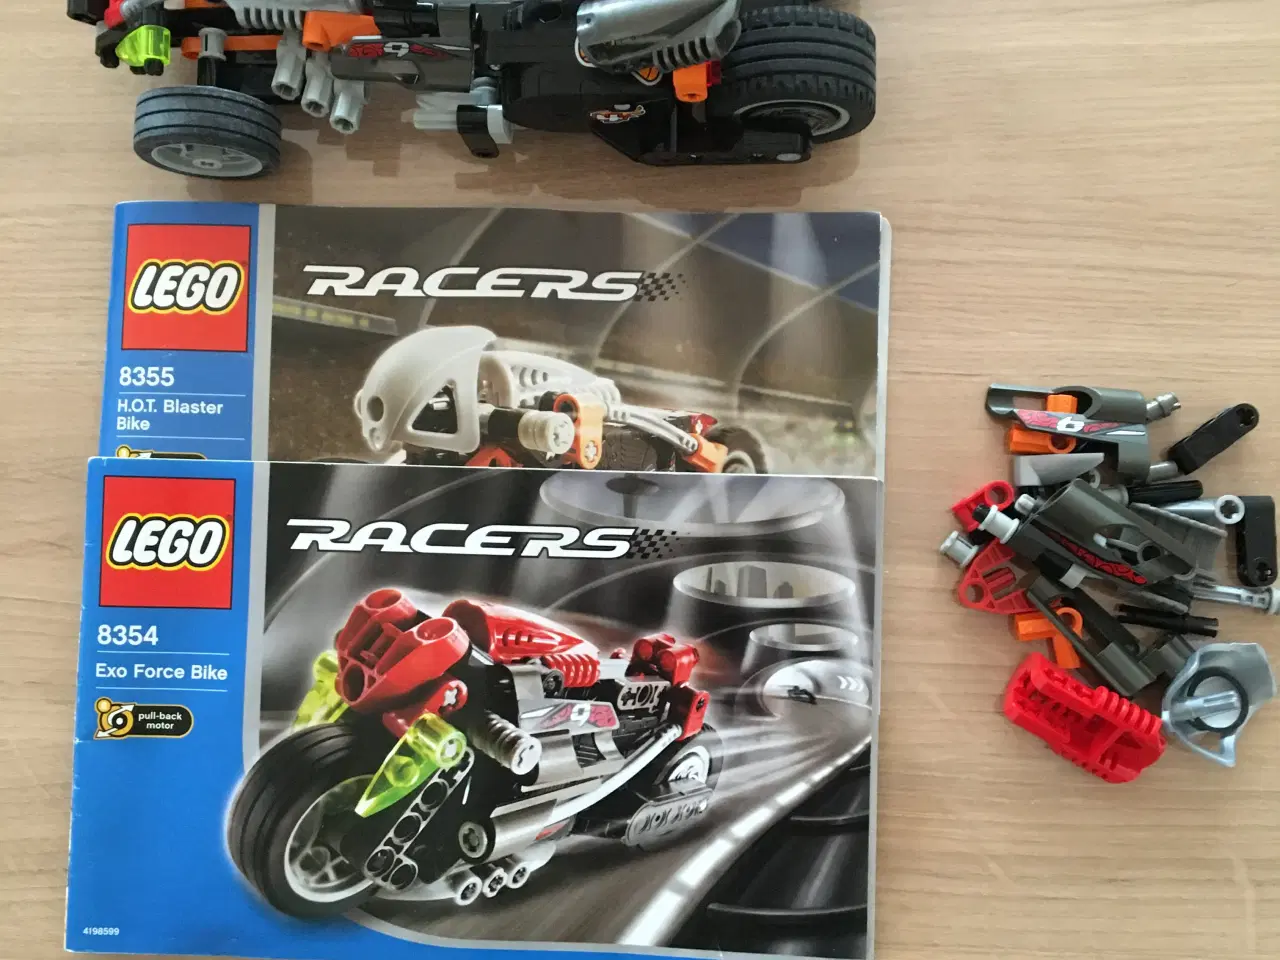 Billede 1 - Lego racers 8354 og 8355